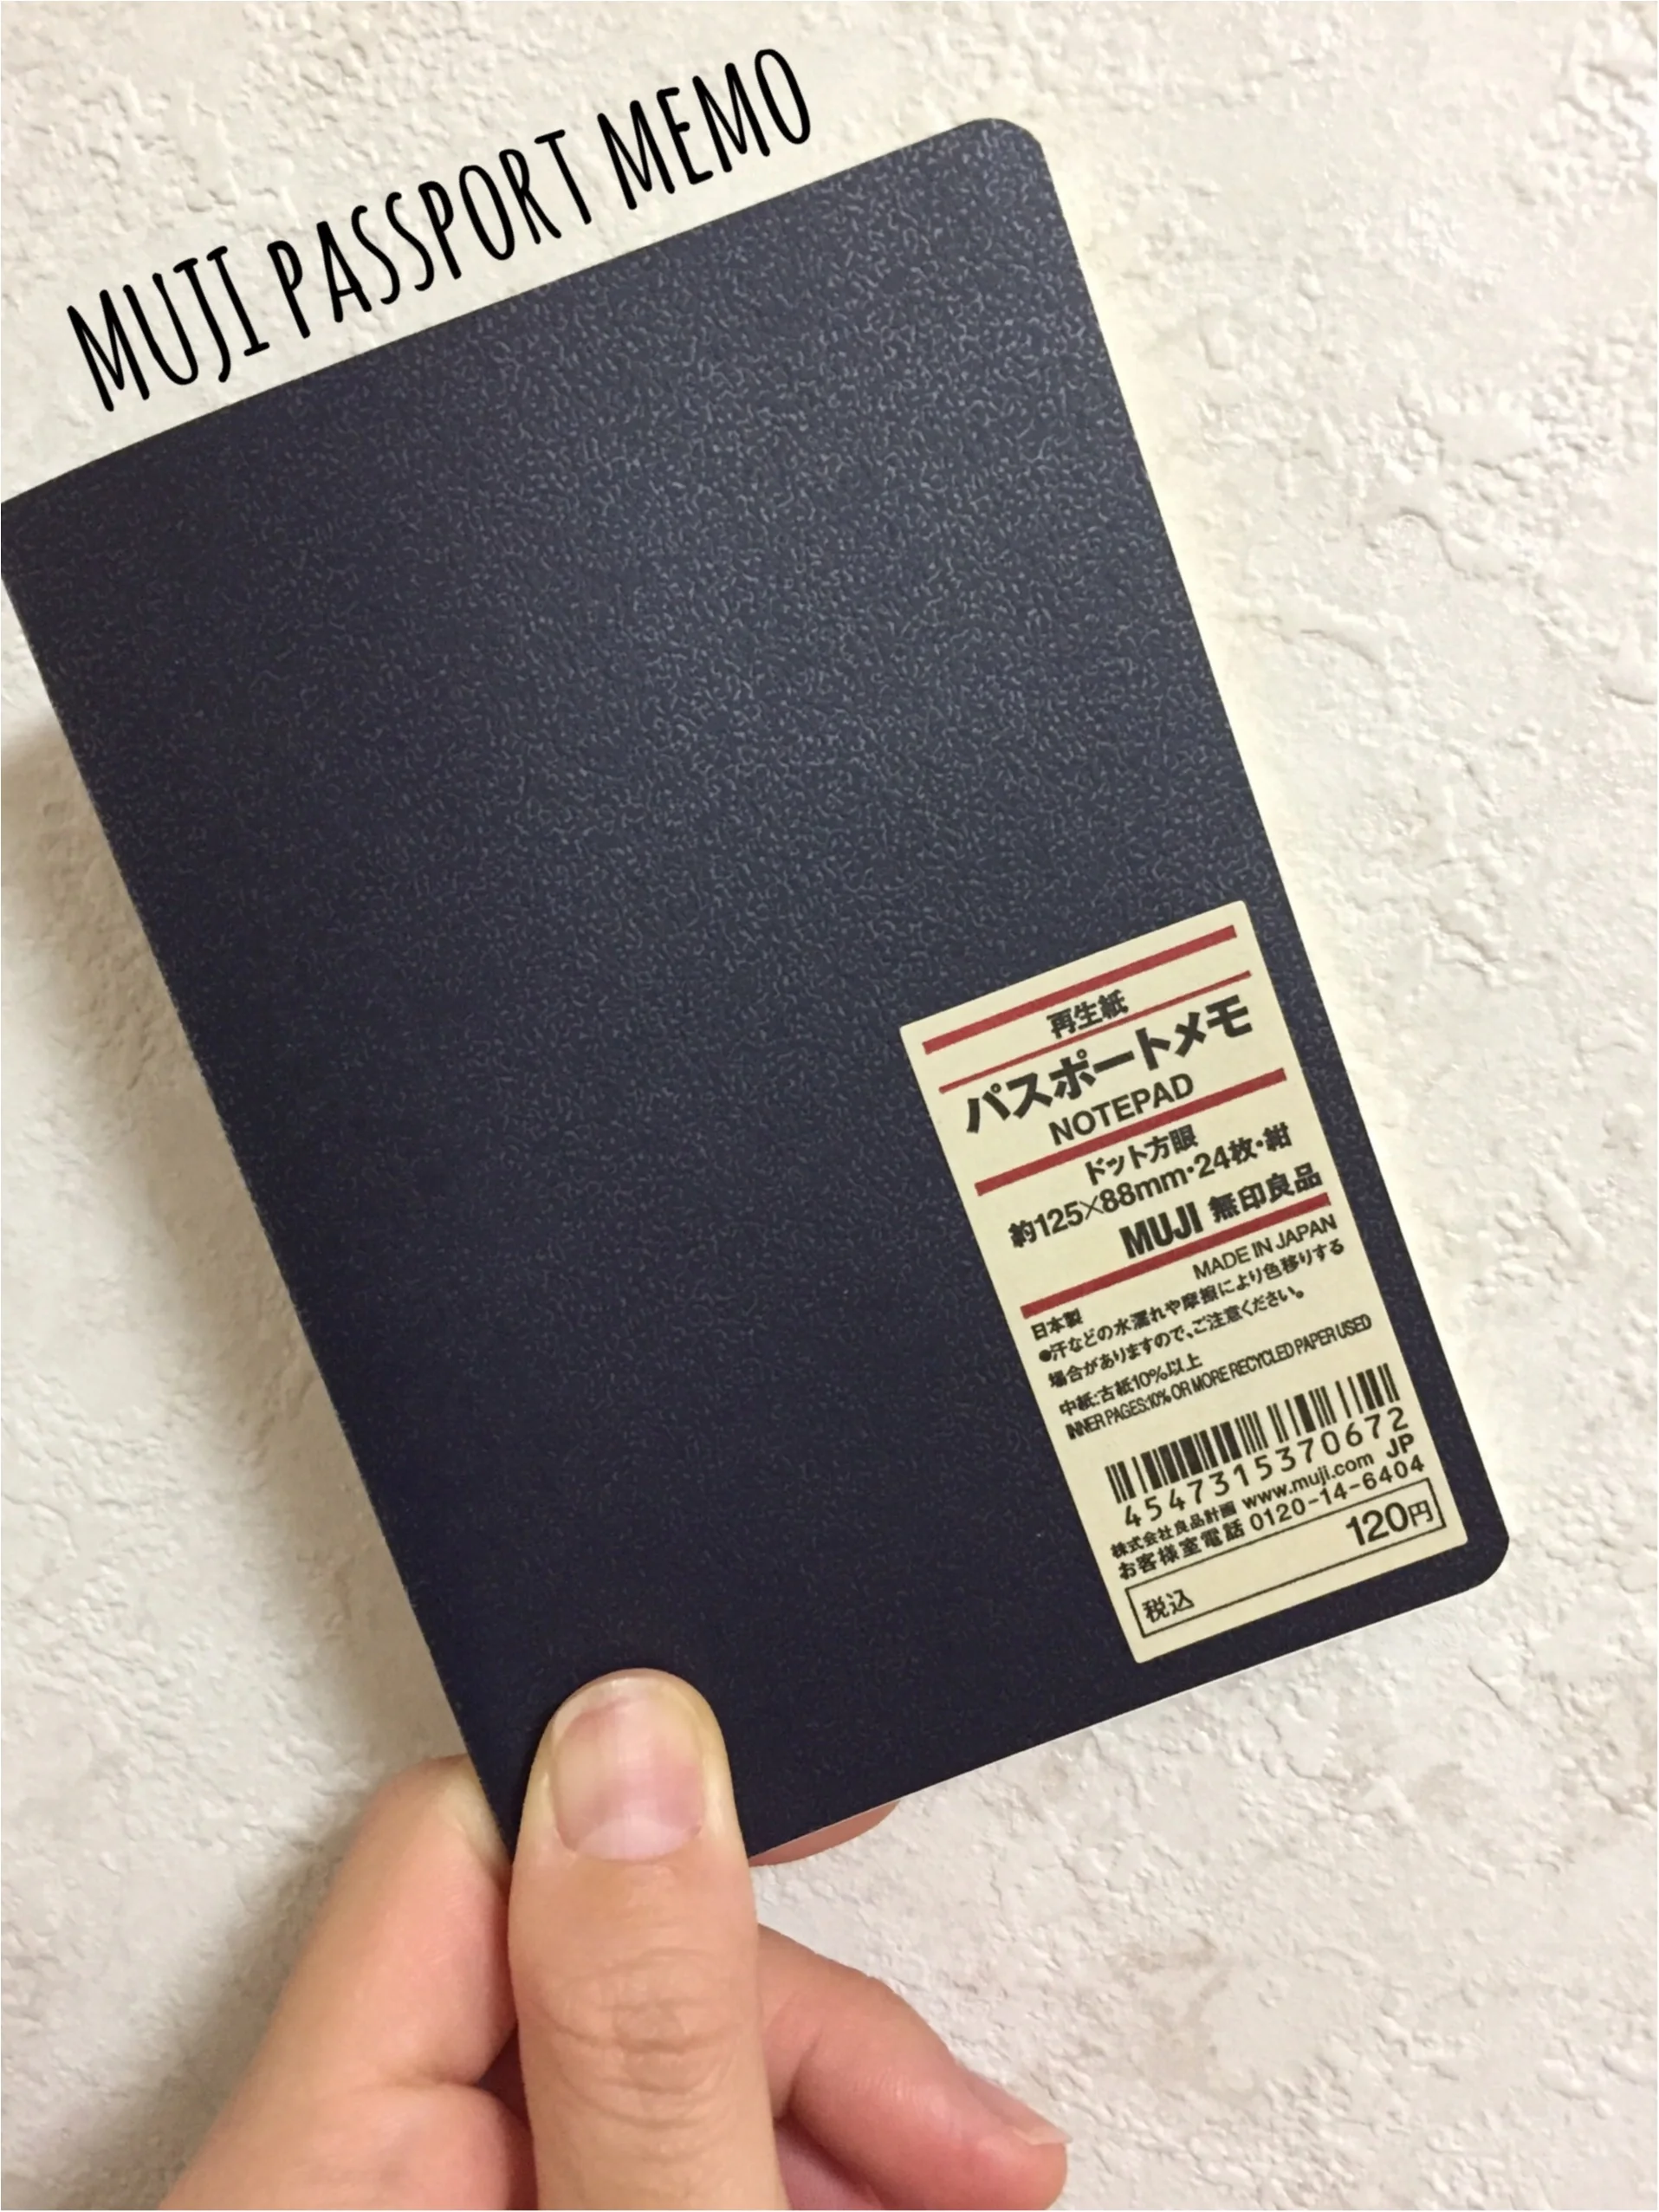 無印良品のパスポートメモ おでかけの記録帳づくりにはシンプルなmujiが使える Moreインフルエンサーズブログ Daily More